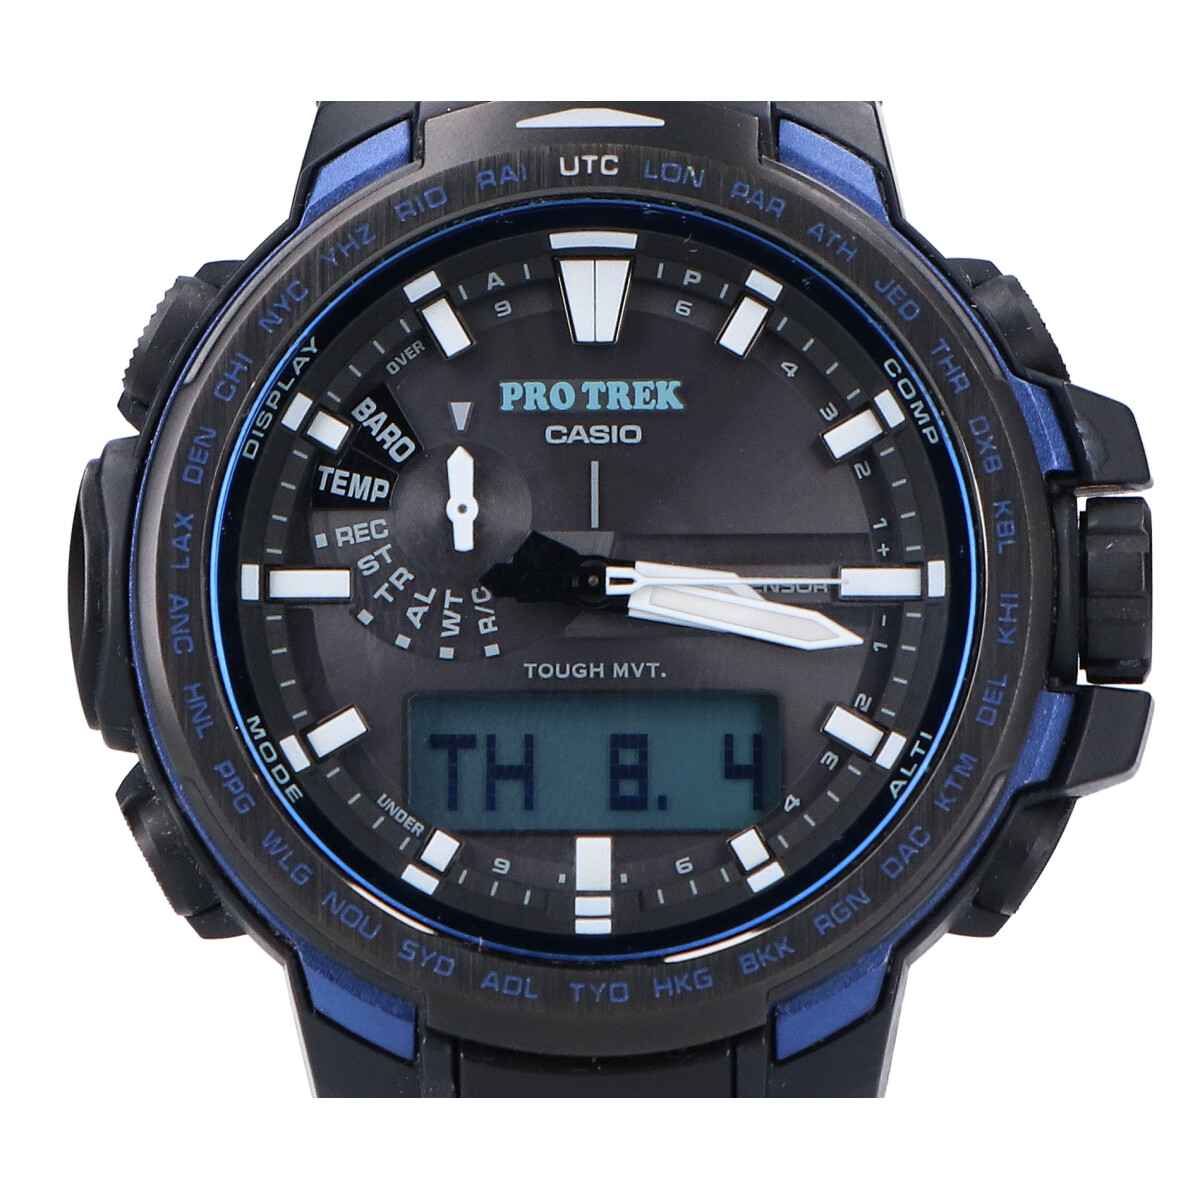 カシオのプロトレック PRW-6100YT-1BJF トリプルセンサー ソーラー電波 腕時計の買取実績です。